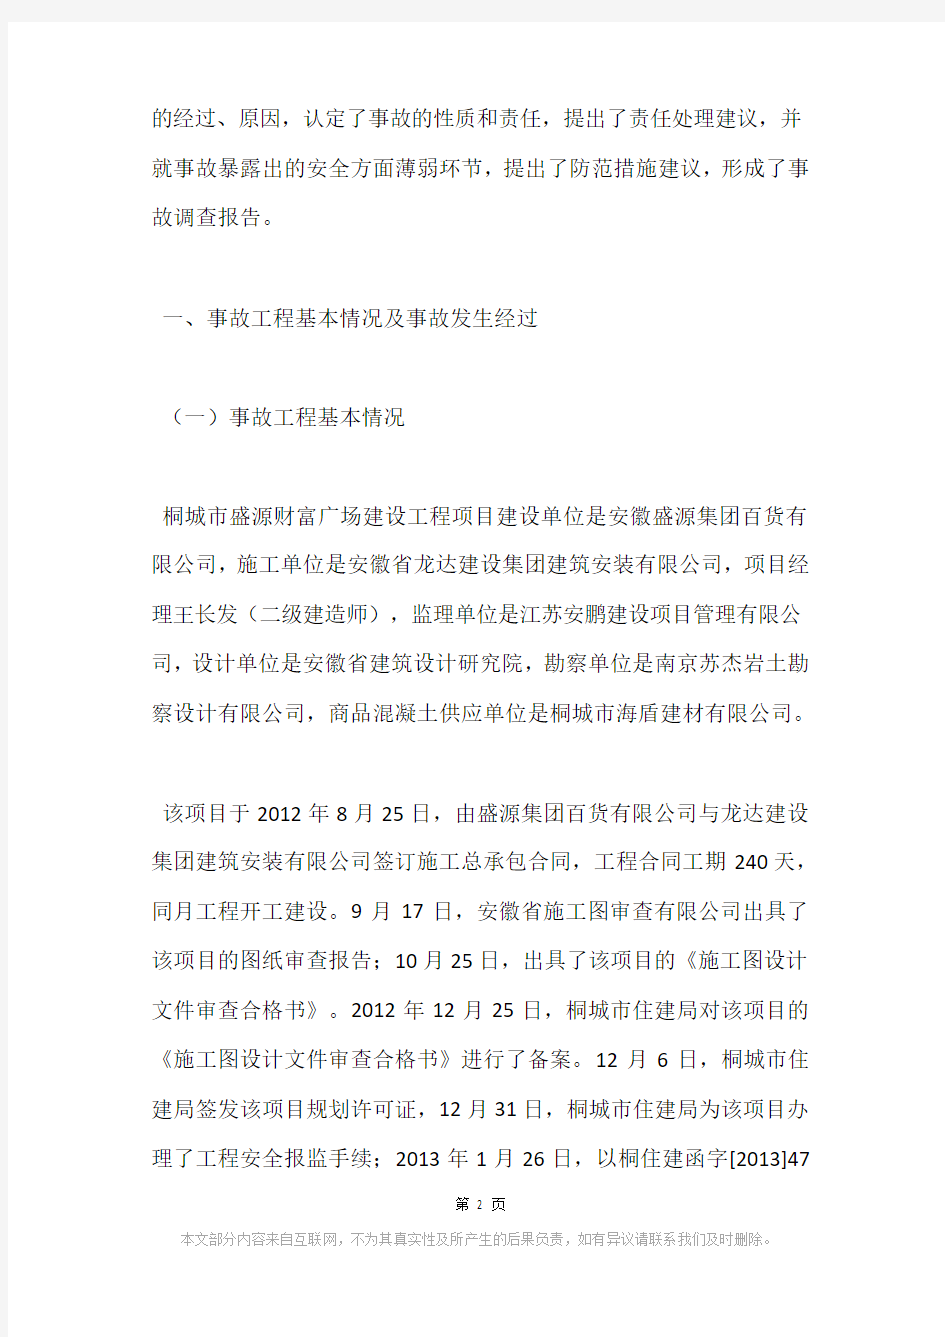 桐城市盛源财富广场 “3.21”较大建筑坍塌事故调查报告